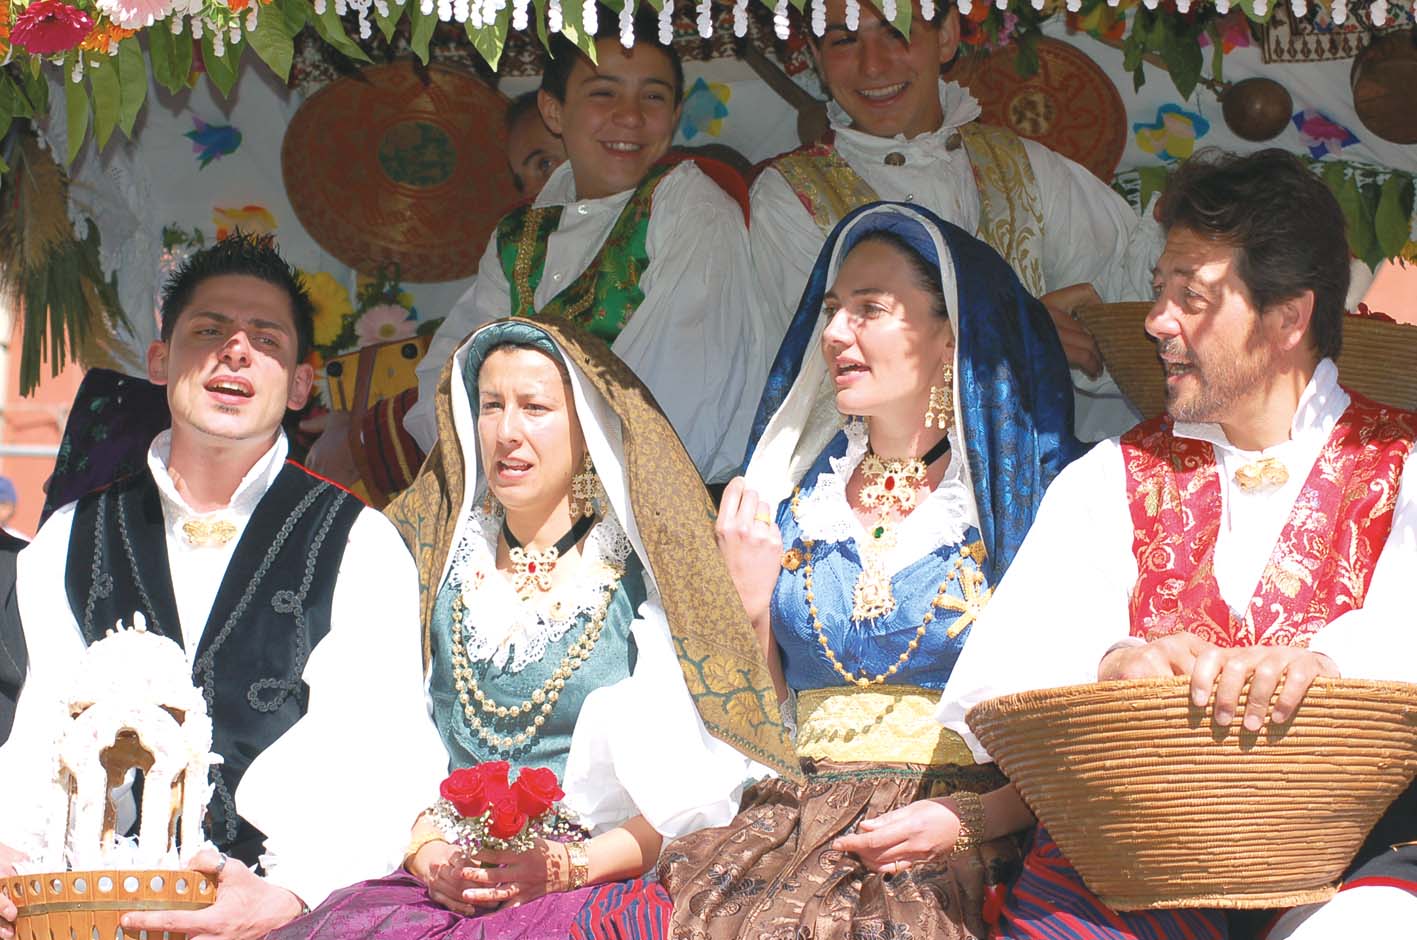 Sant' Efisio Feierlichkeiten in traditionell sardischer Tracht